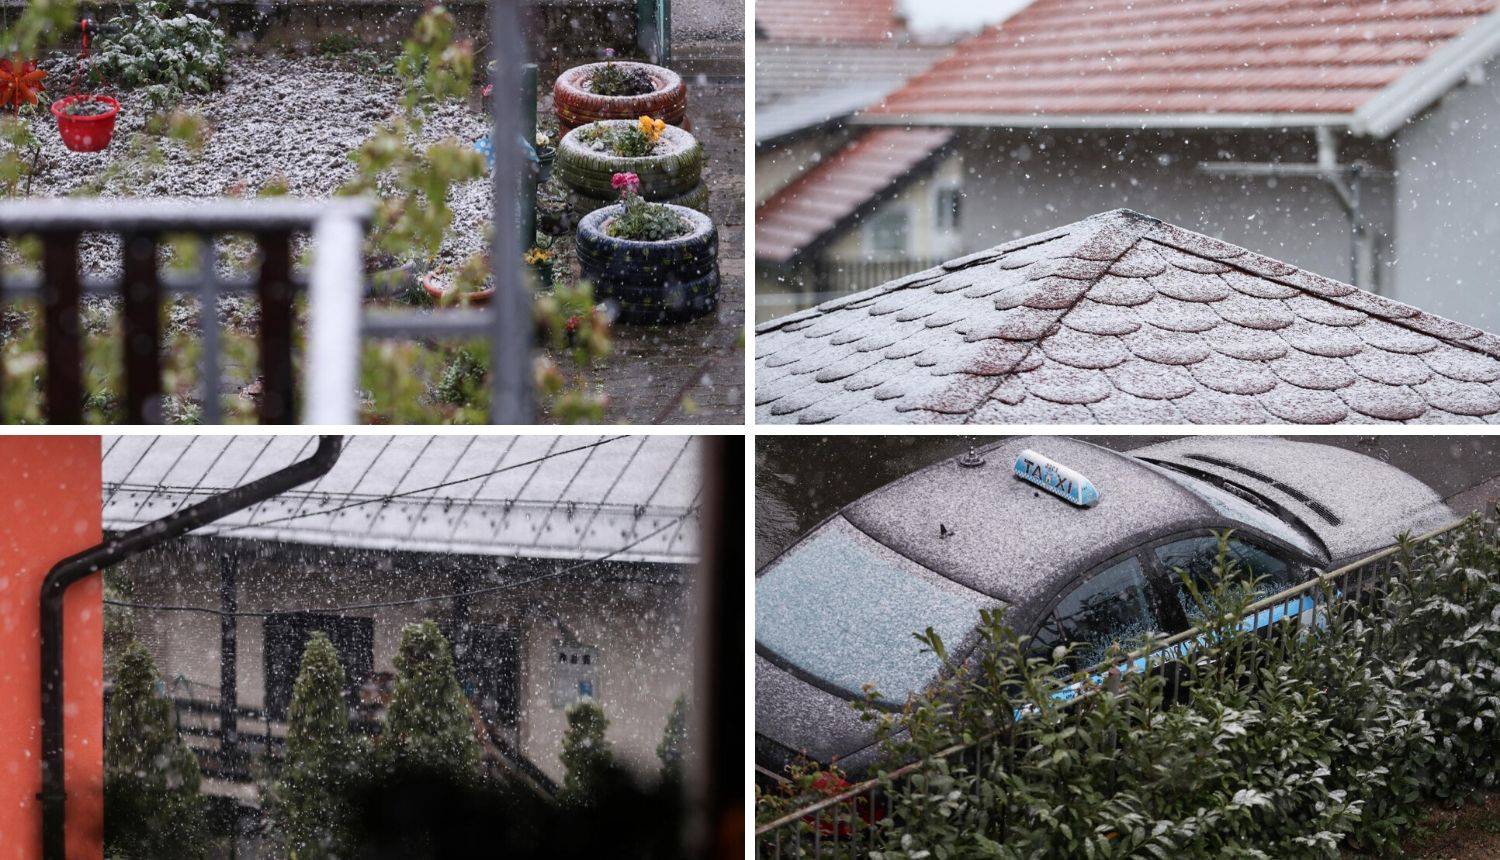 Ludo vrijeme! Jučer u Zagrebu 23 stupnja, a sada pada snijeg